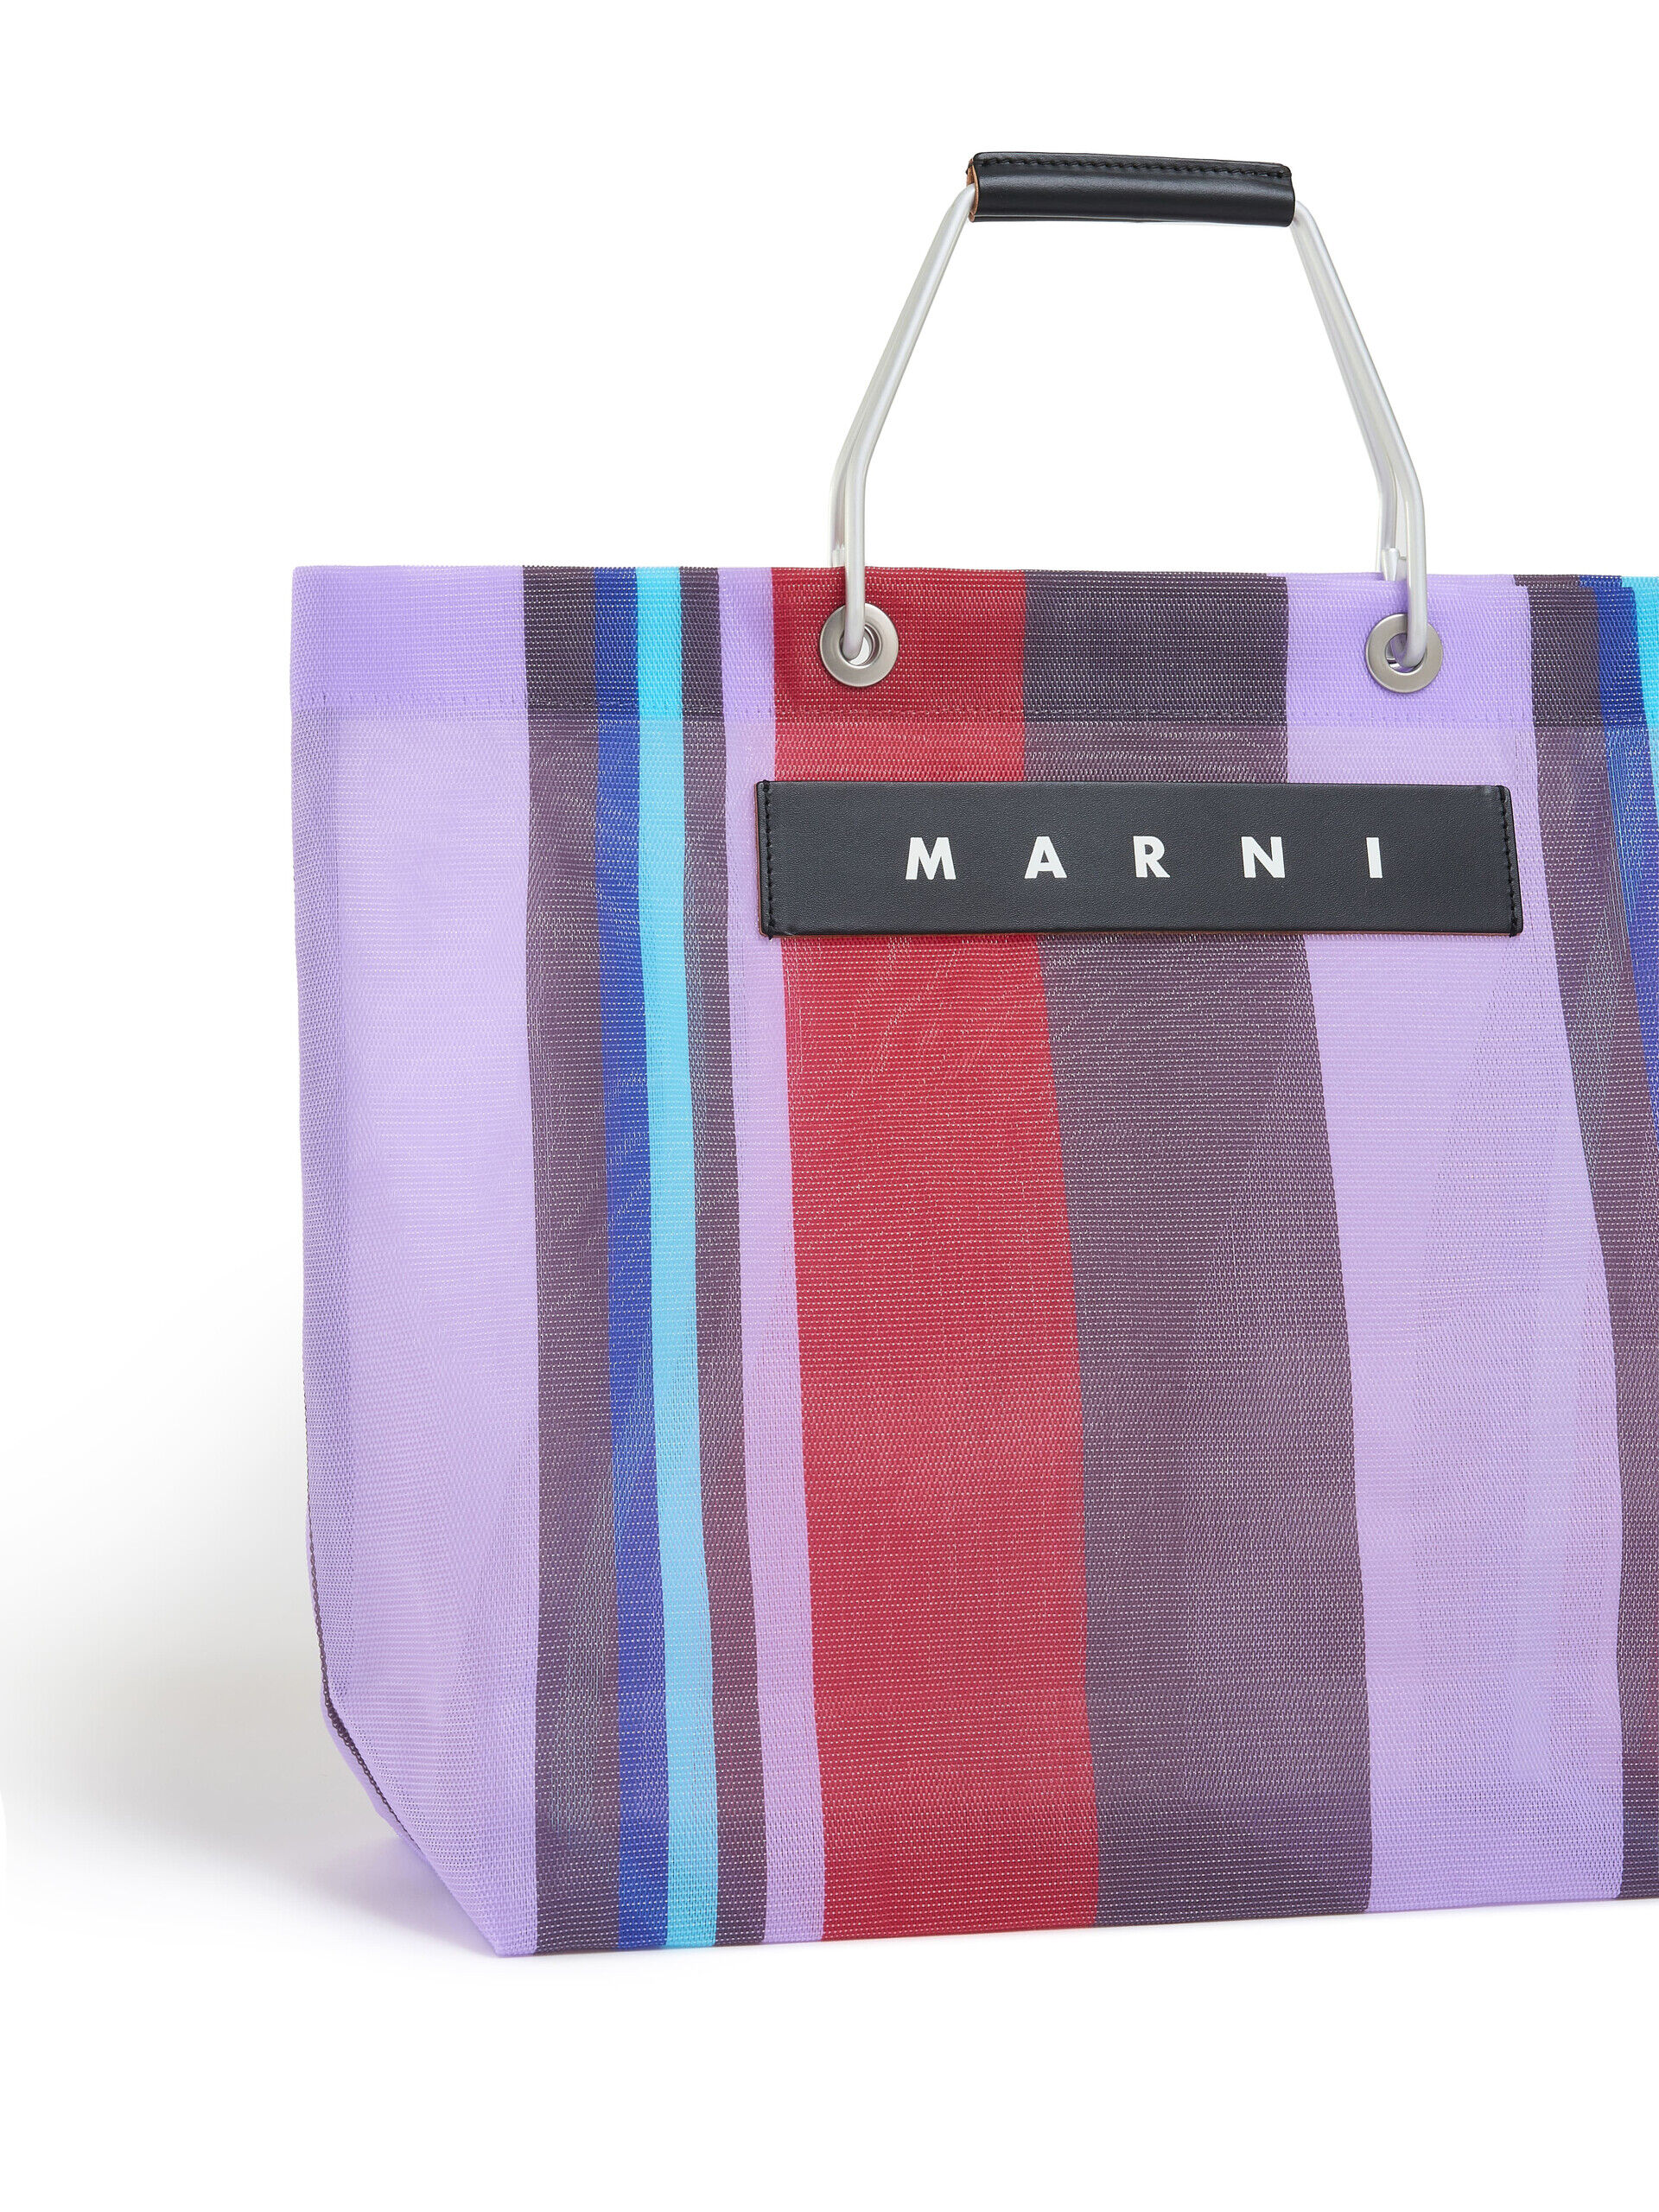 ロイヤルブルー(ロイヤル) MARNI MARKET STRIPE BAG | Marni